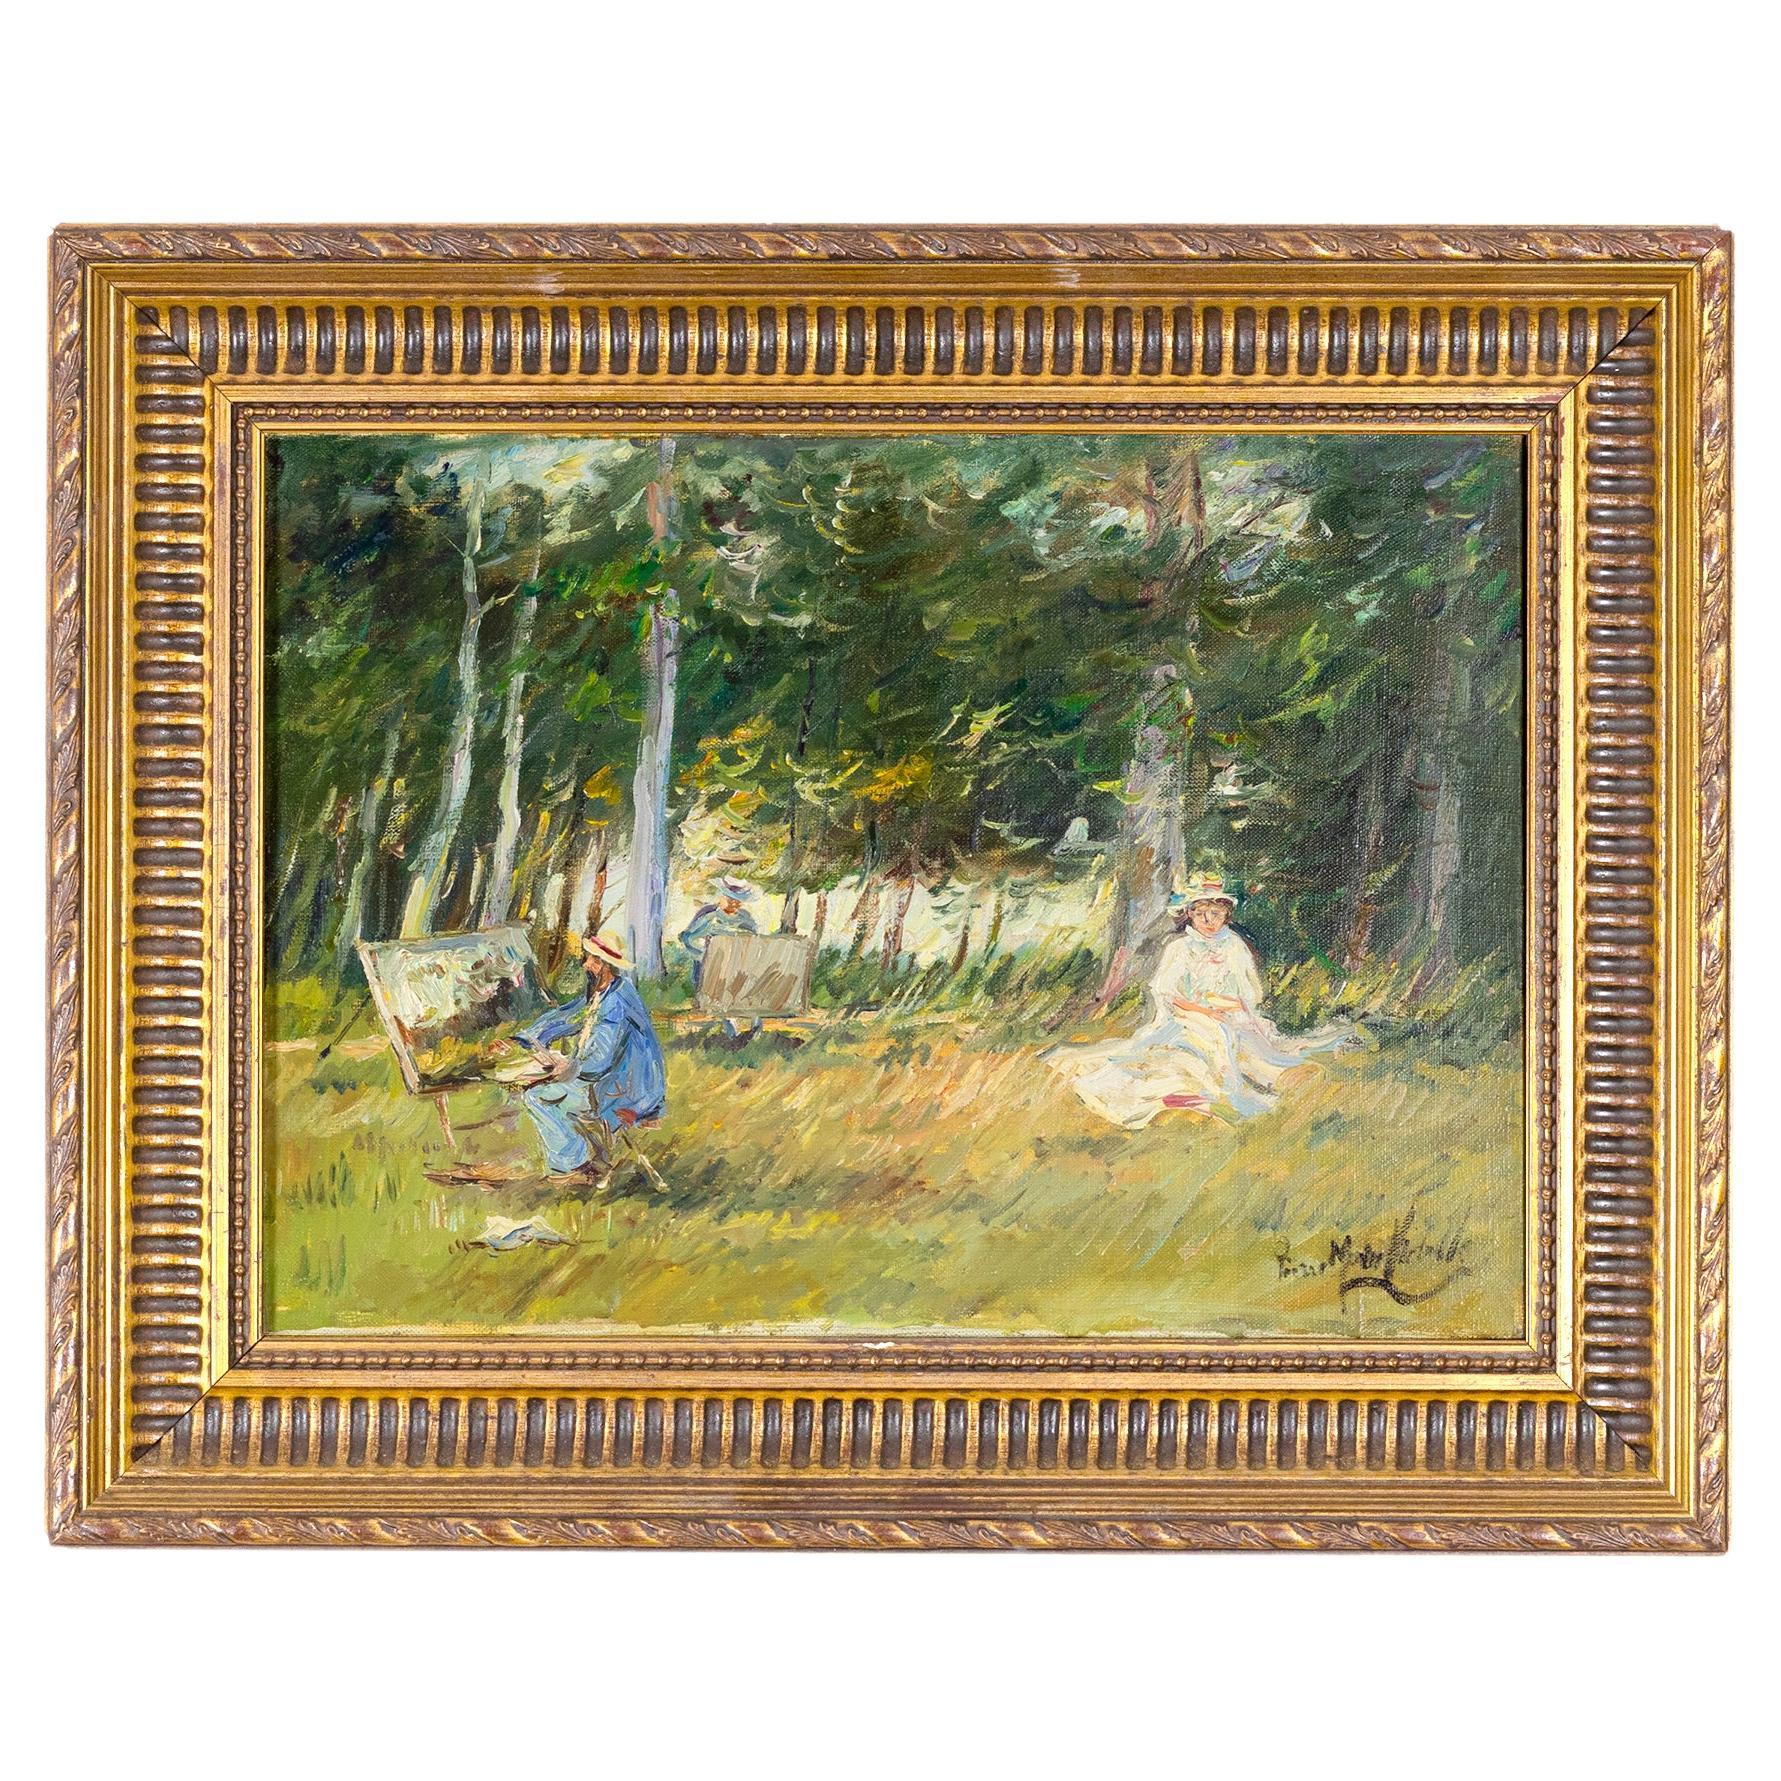 Scène de style Barbizon par Pierre Morinville, peinture du 19e siècle